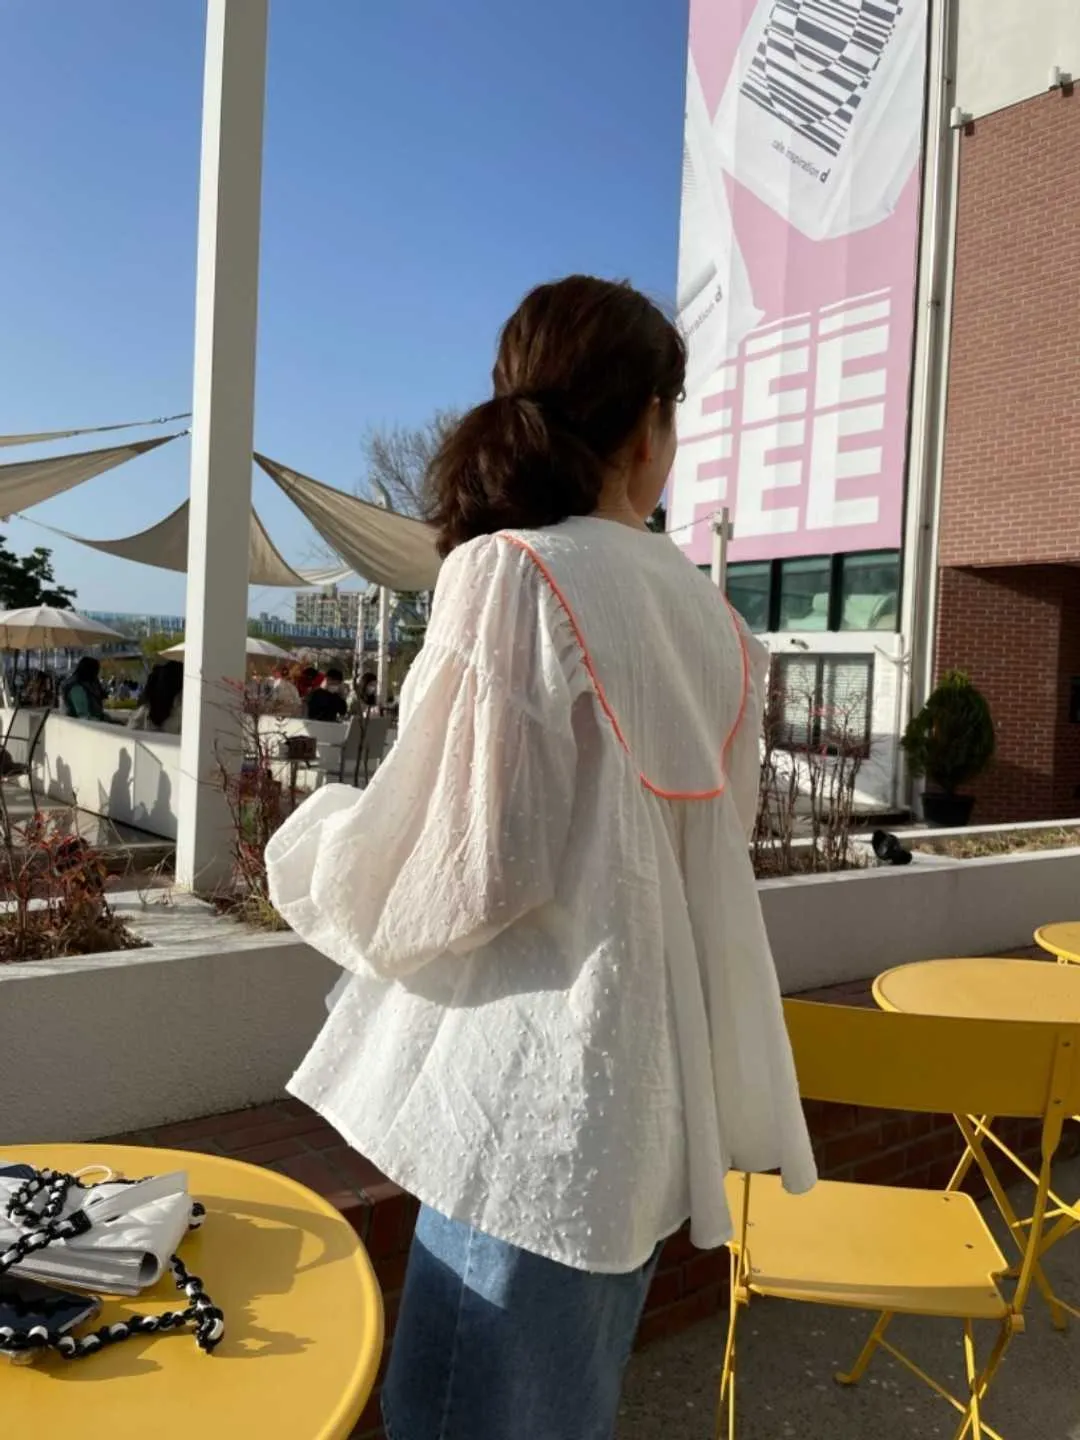 Korejpaa Kvinnorskjorta Sommar Koreanska Chic Fresh V-Neck Drawstring Tassel tredimensionell Polka Dot Puff Sleeve Doll Blusar 210526